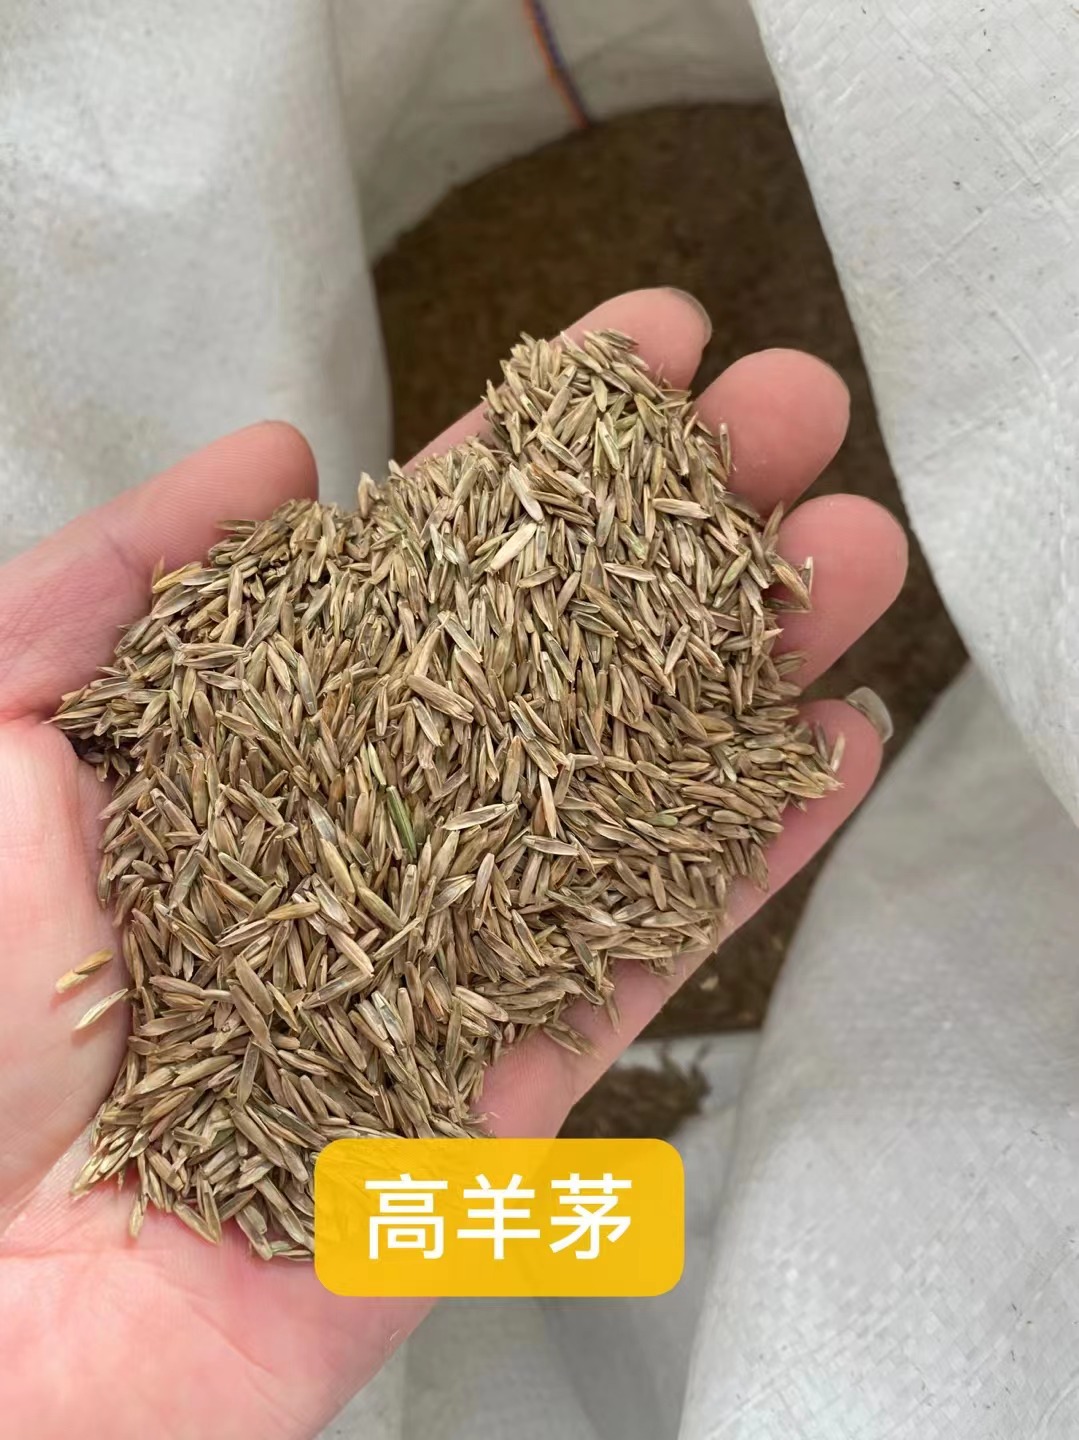 安徽芜湖出售大丽花籽 玉米草草种子 包衣翦股颖